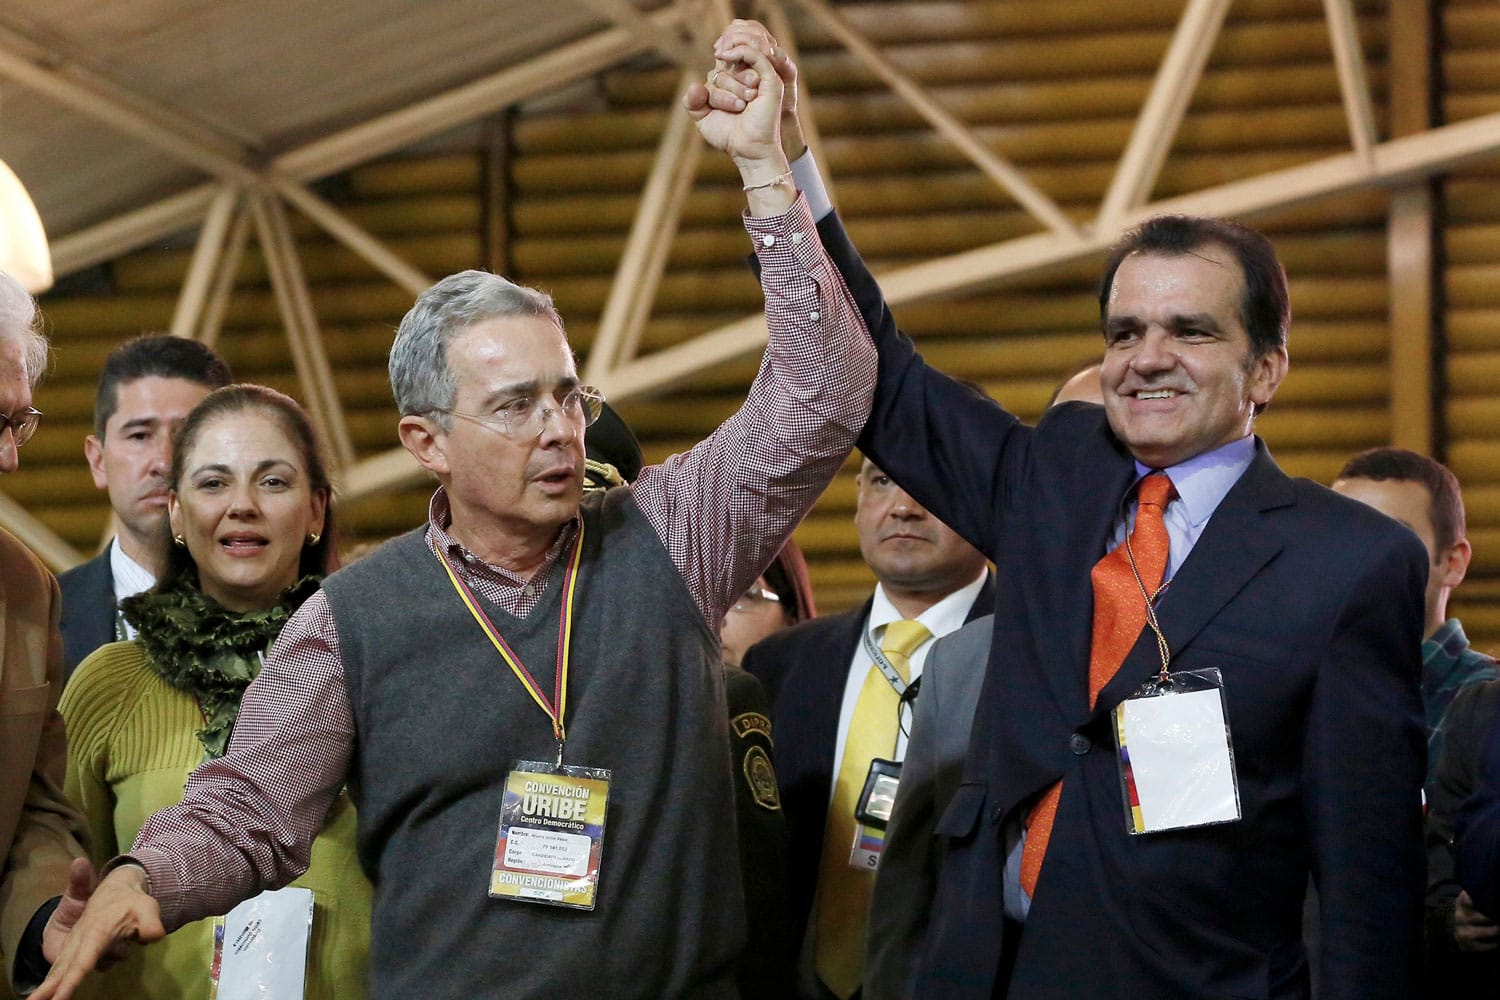 Las FARC ultimaban un plan para matar al ex presidente Álvaro Uribe